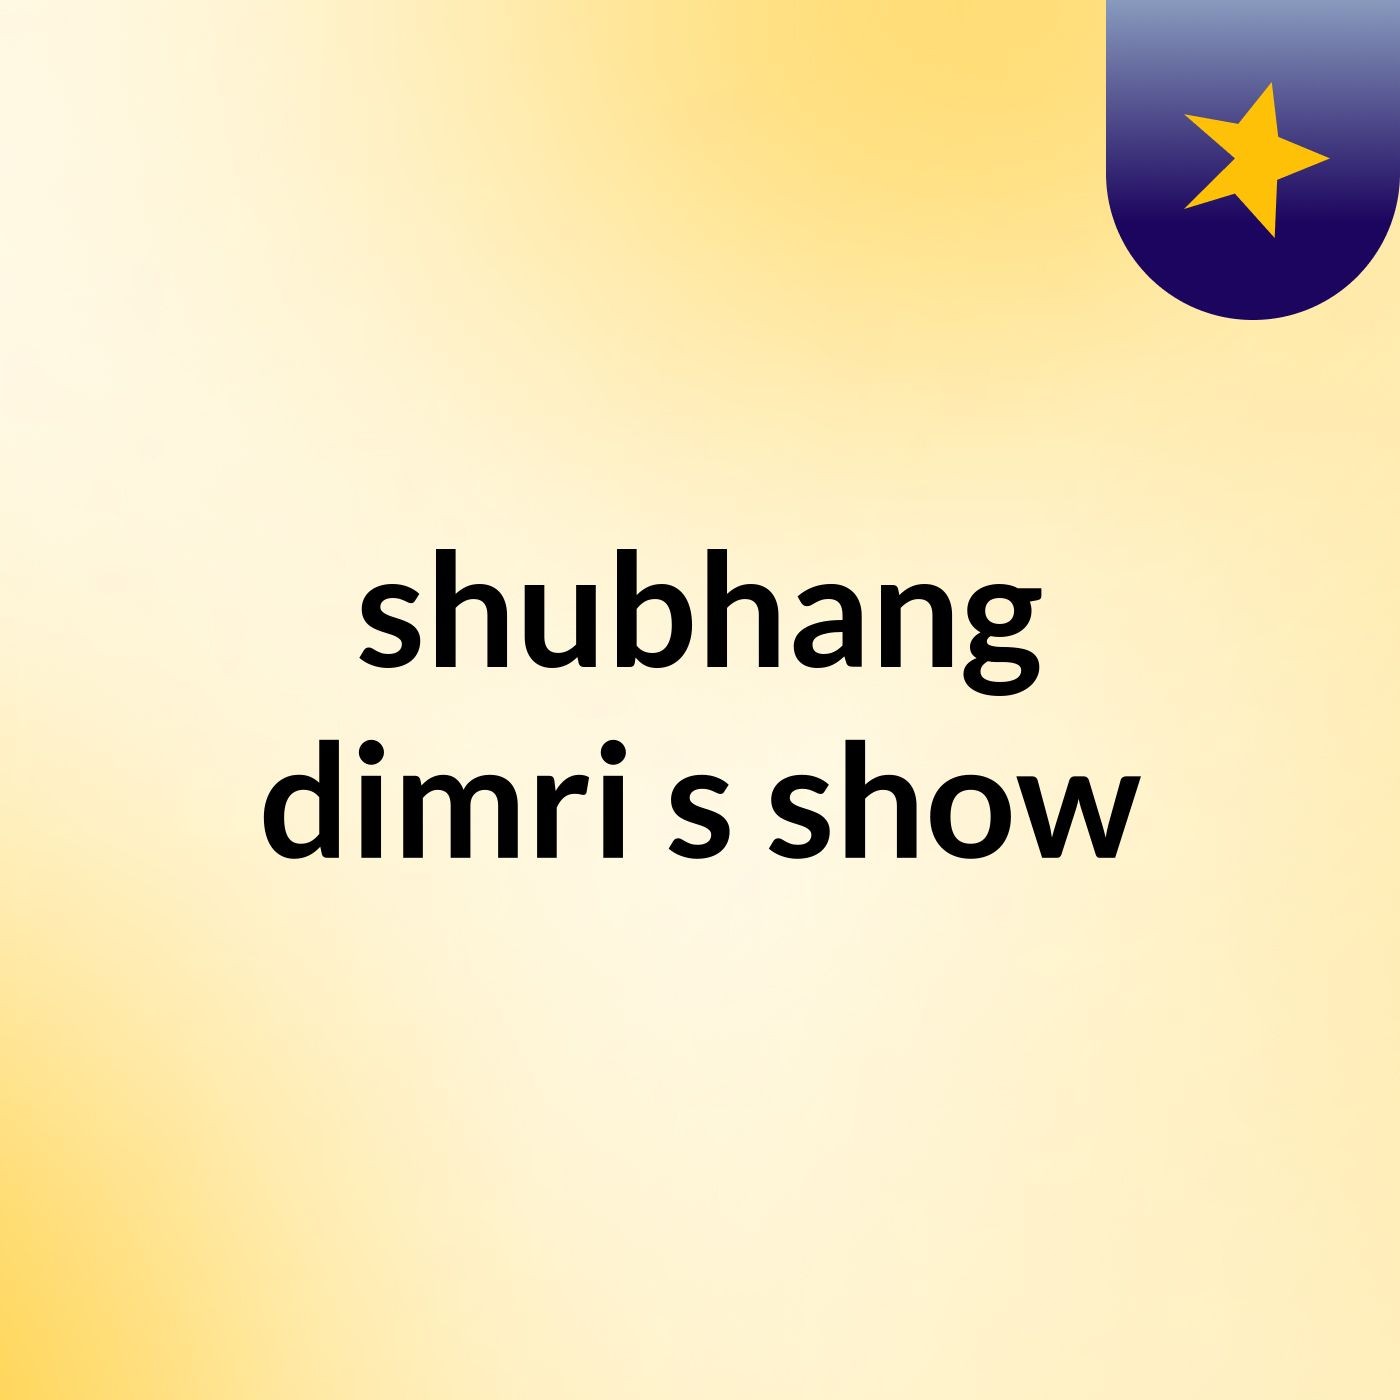 shubhang dimri's show